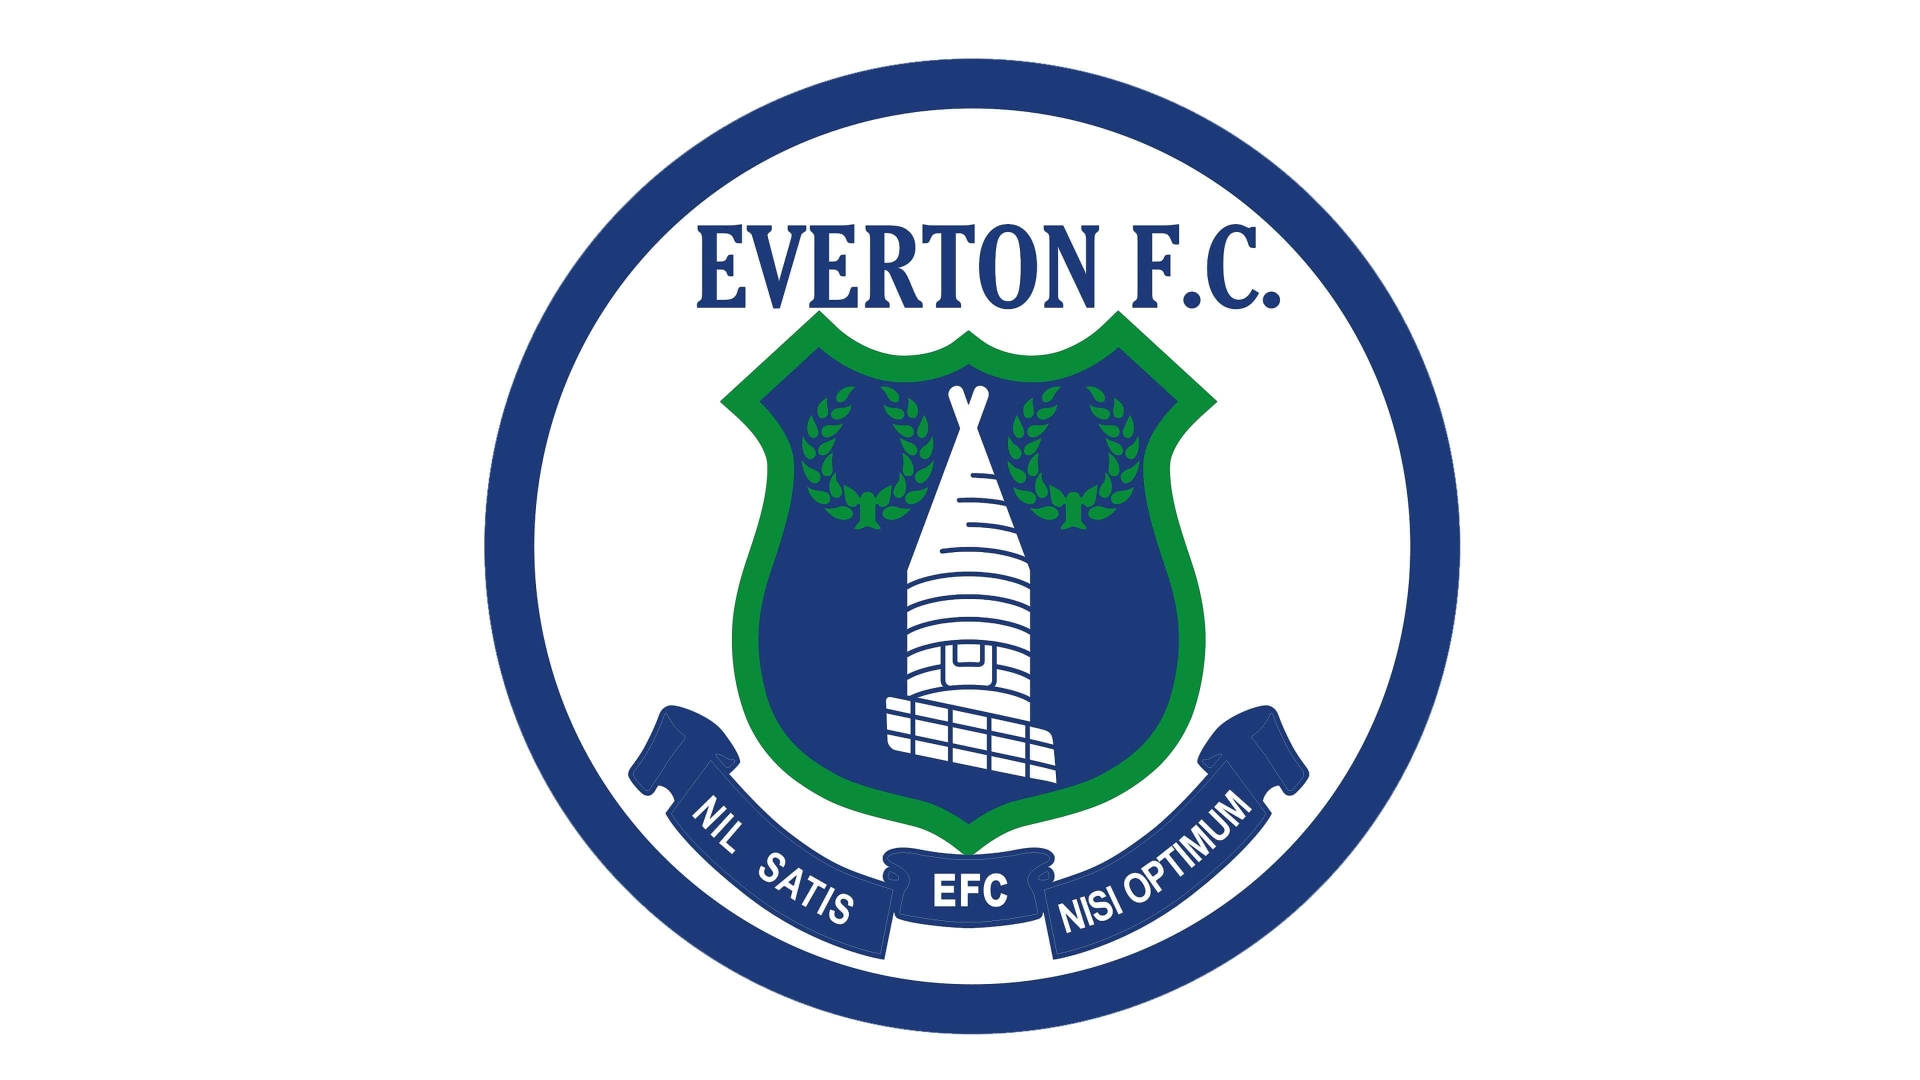 1978 Everton F.C. Emblem Wallpaper